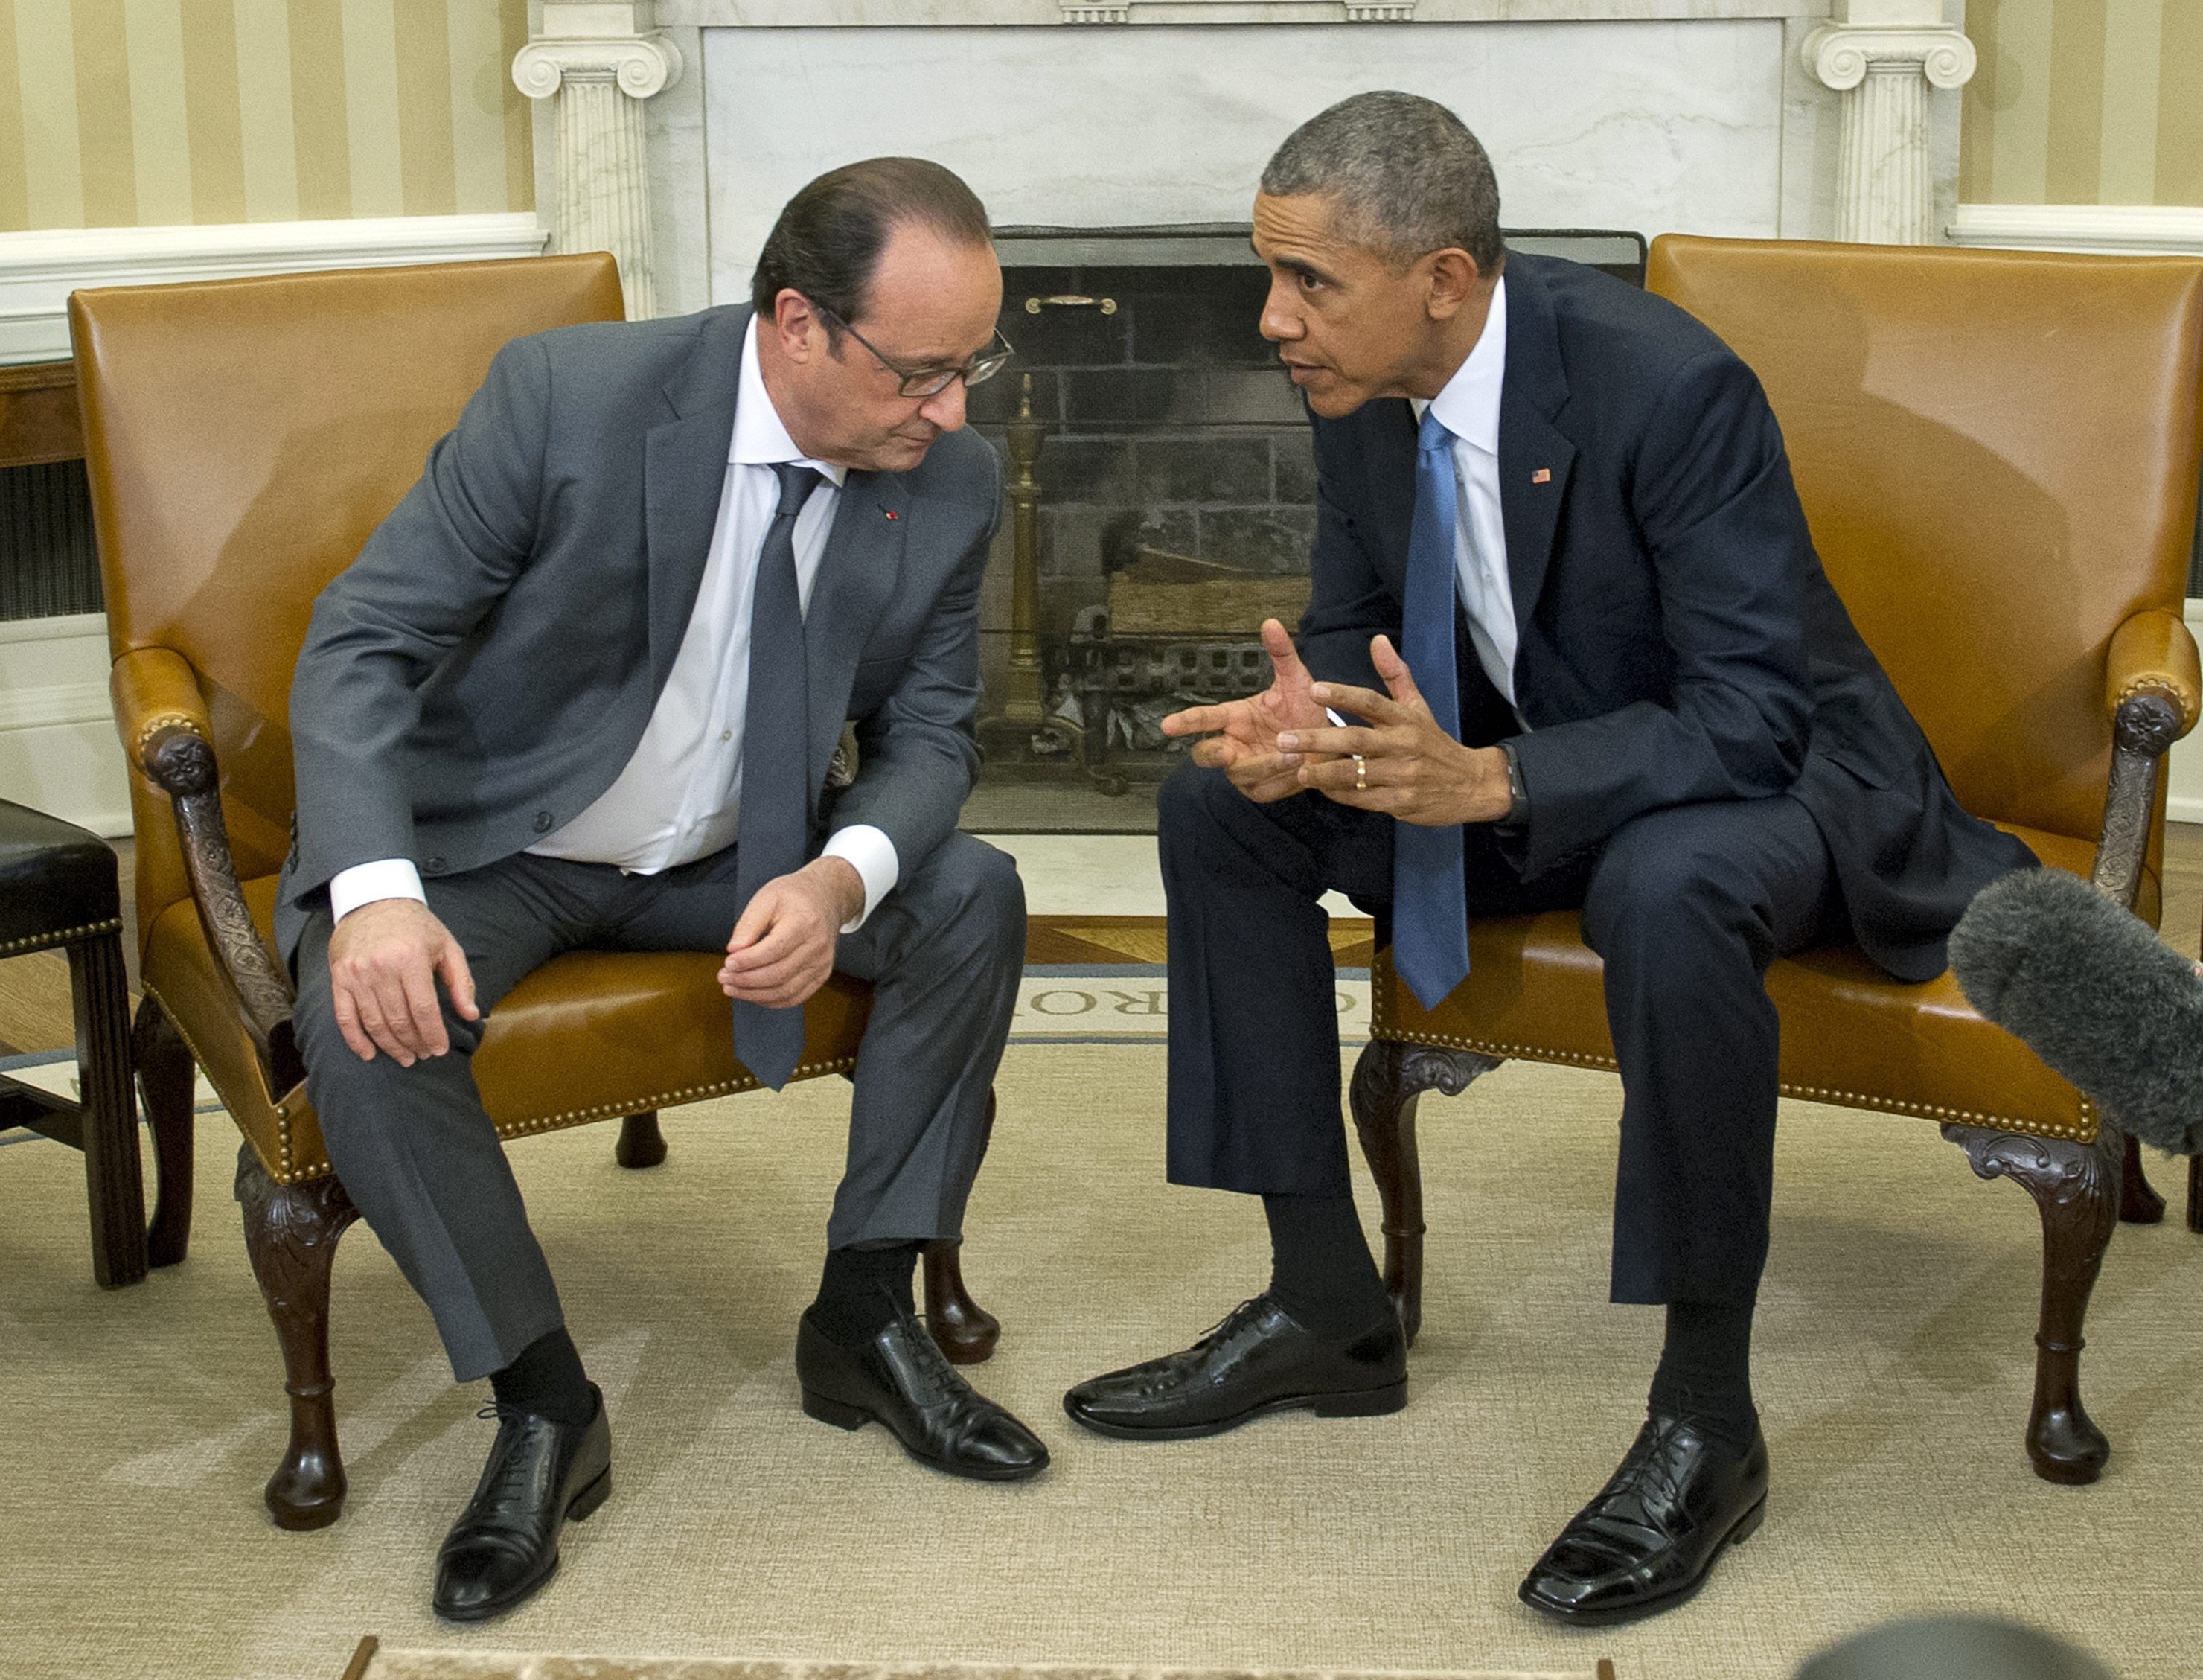 Ο Ομπάμα βλέπει τον Ολάντ, ο Μπάιντεν τον ουκρανό πρόεδρο